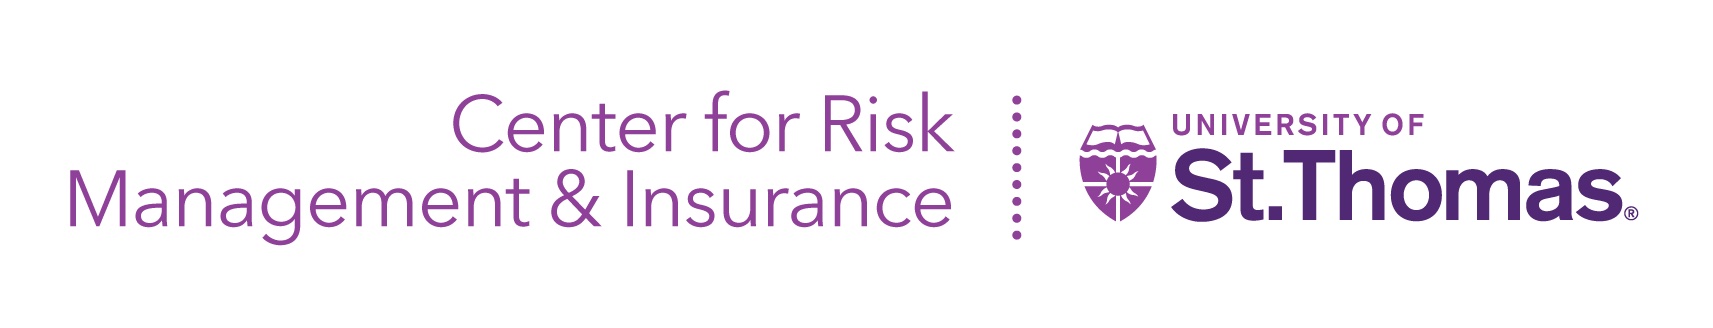 Center for Risk Management & Insurance | University of St. Thomas